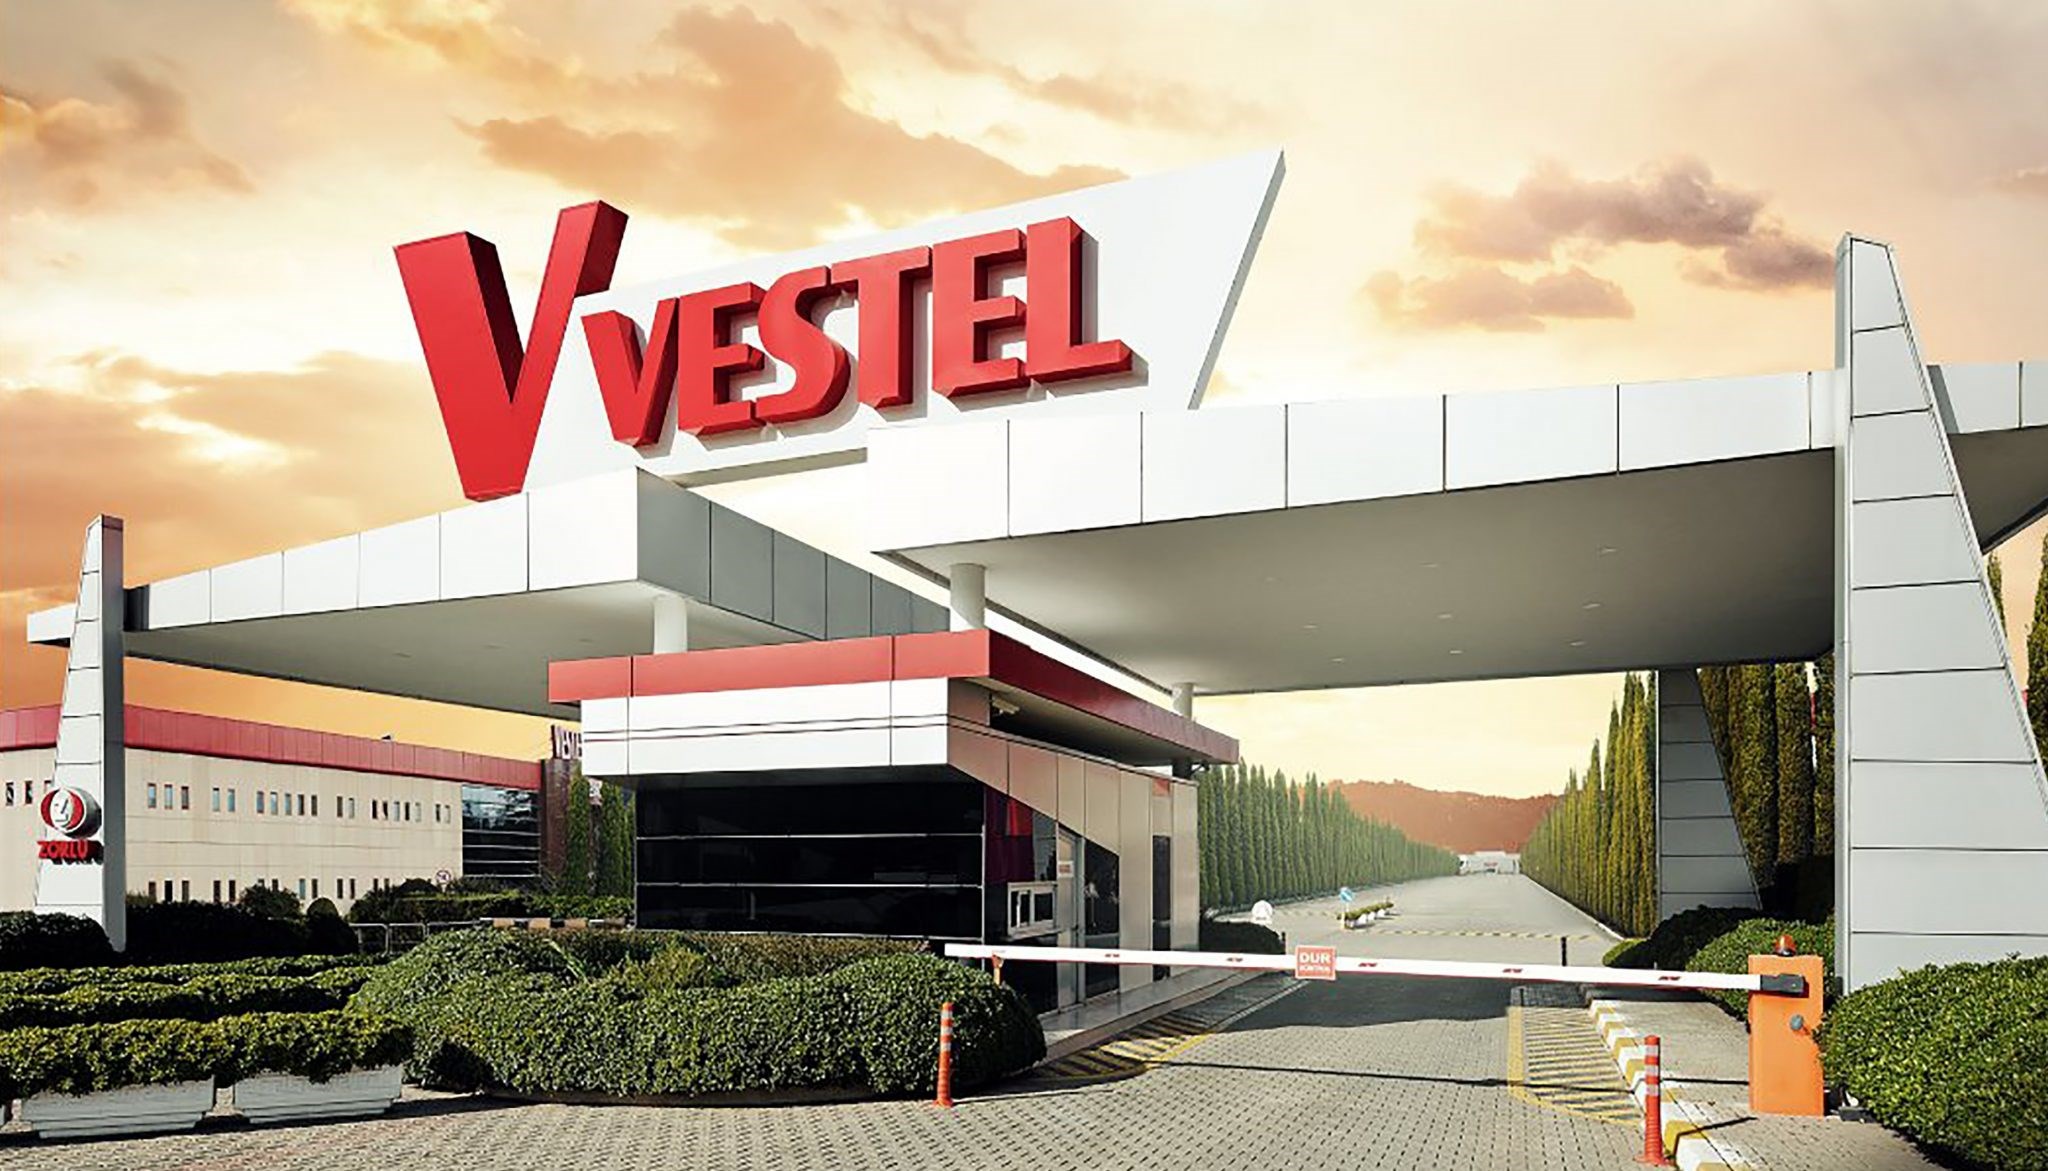 Vestel'den 684 milyon euroluk tazminat hakkında yeni açıklama